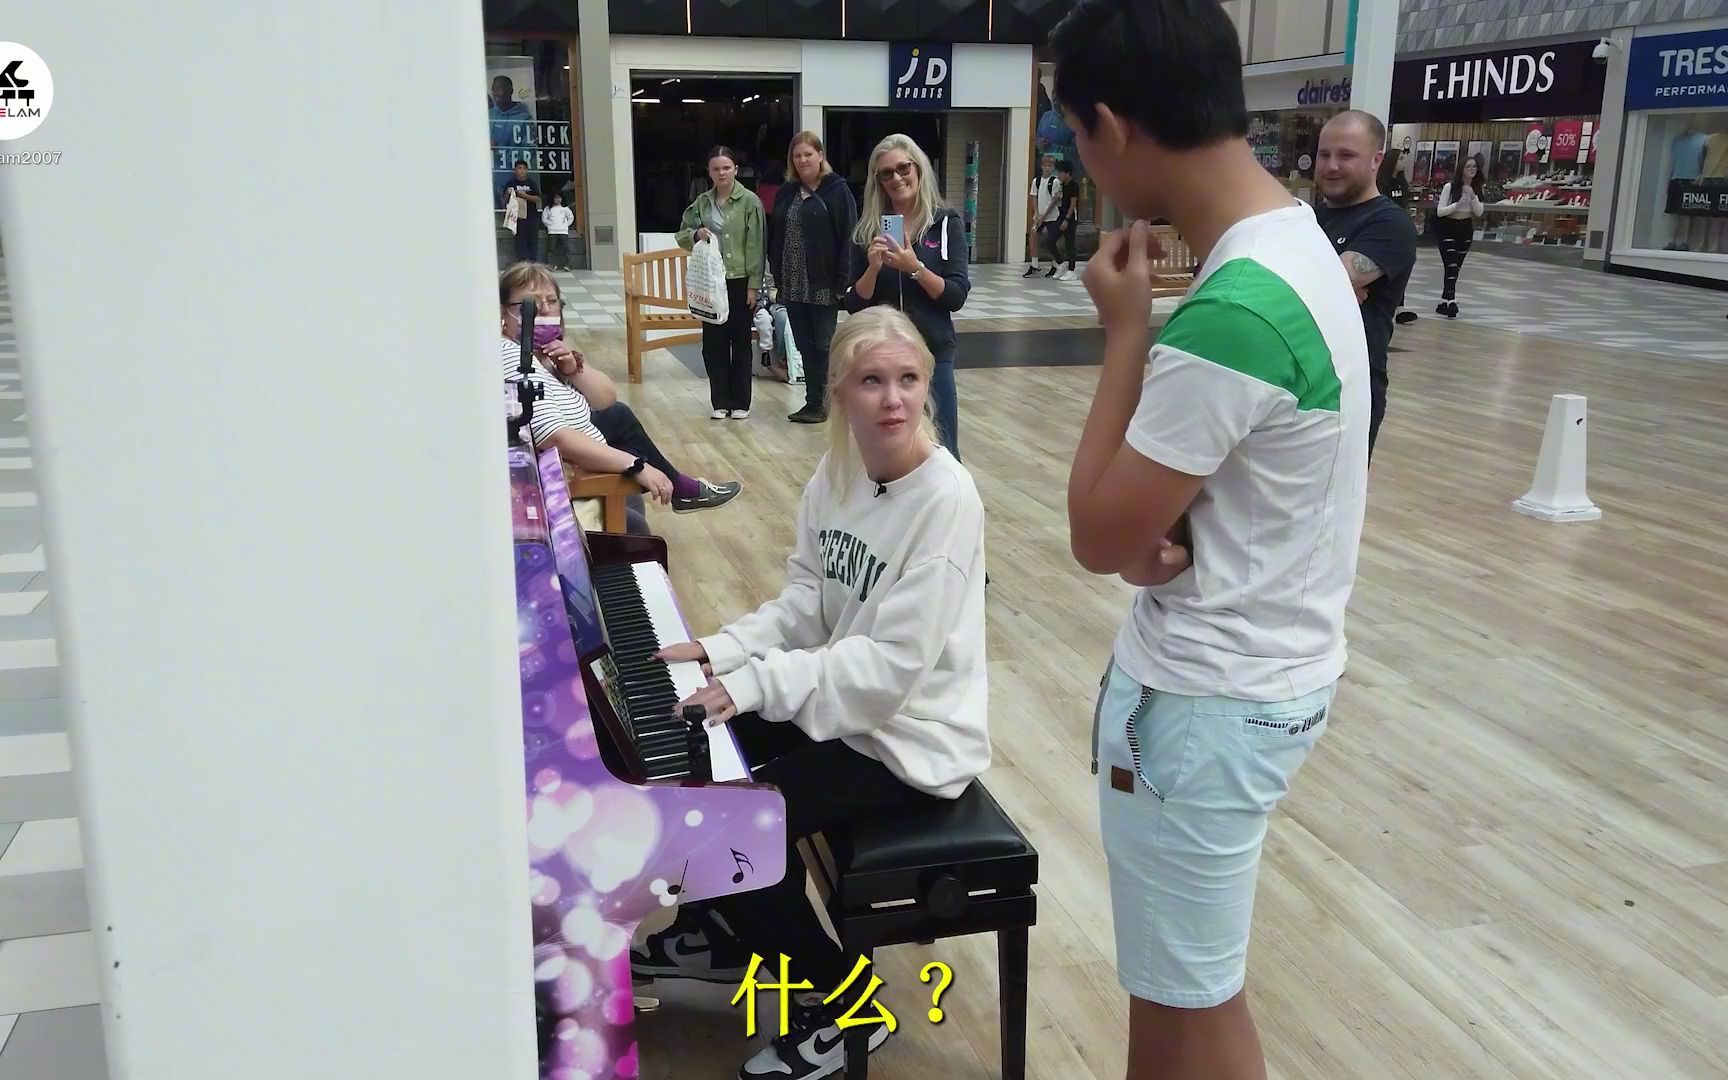 小镇偶遇一女孩弹琴，她问：“你弹琴吗？”我说：“会！”